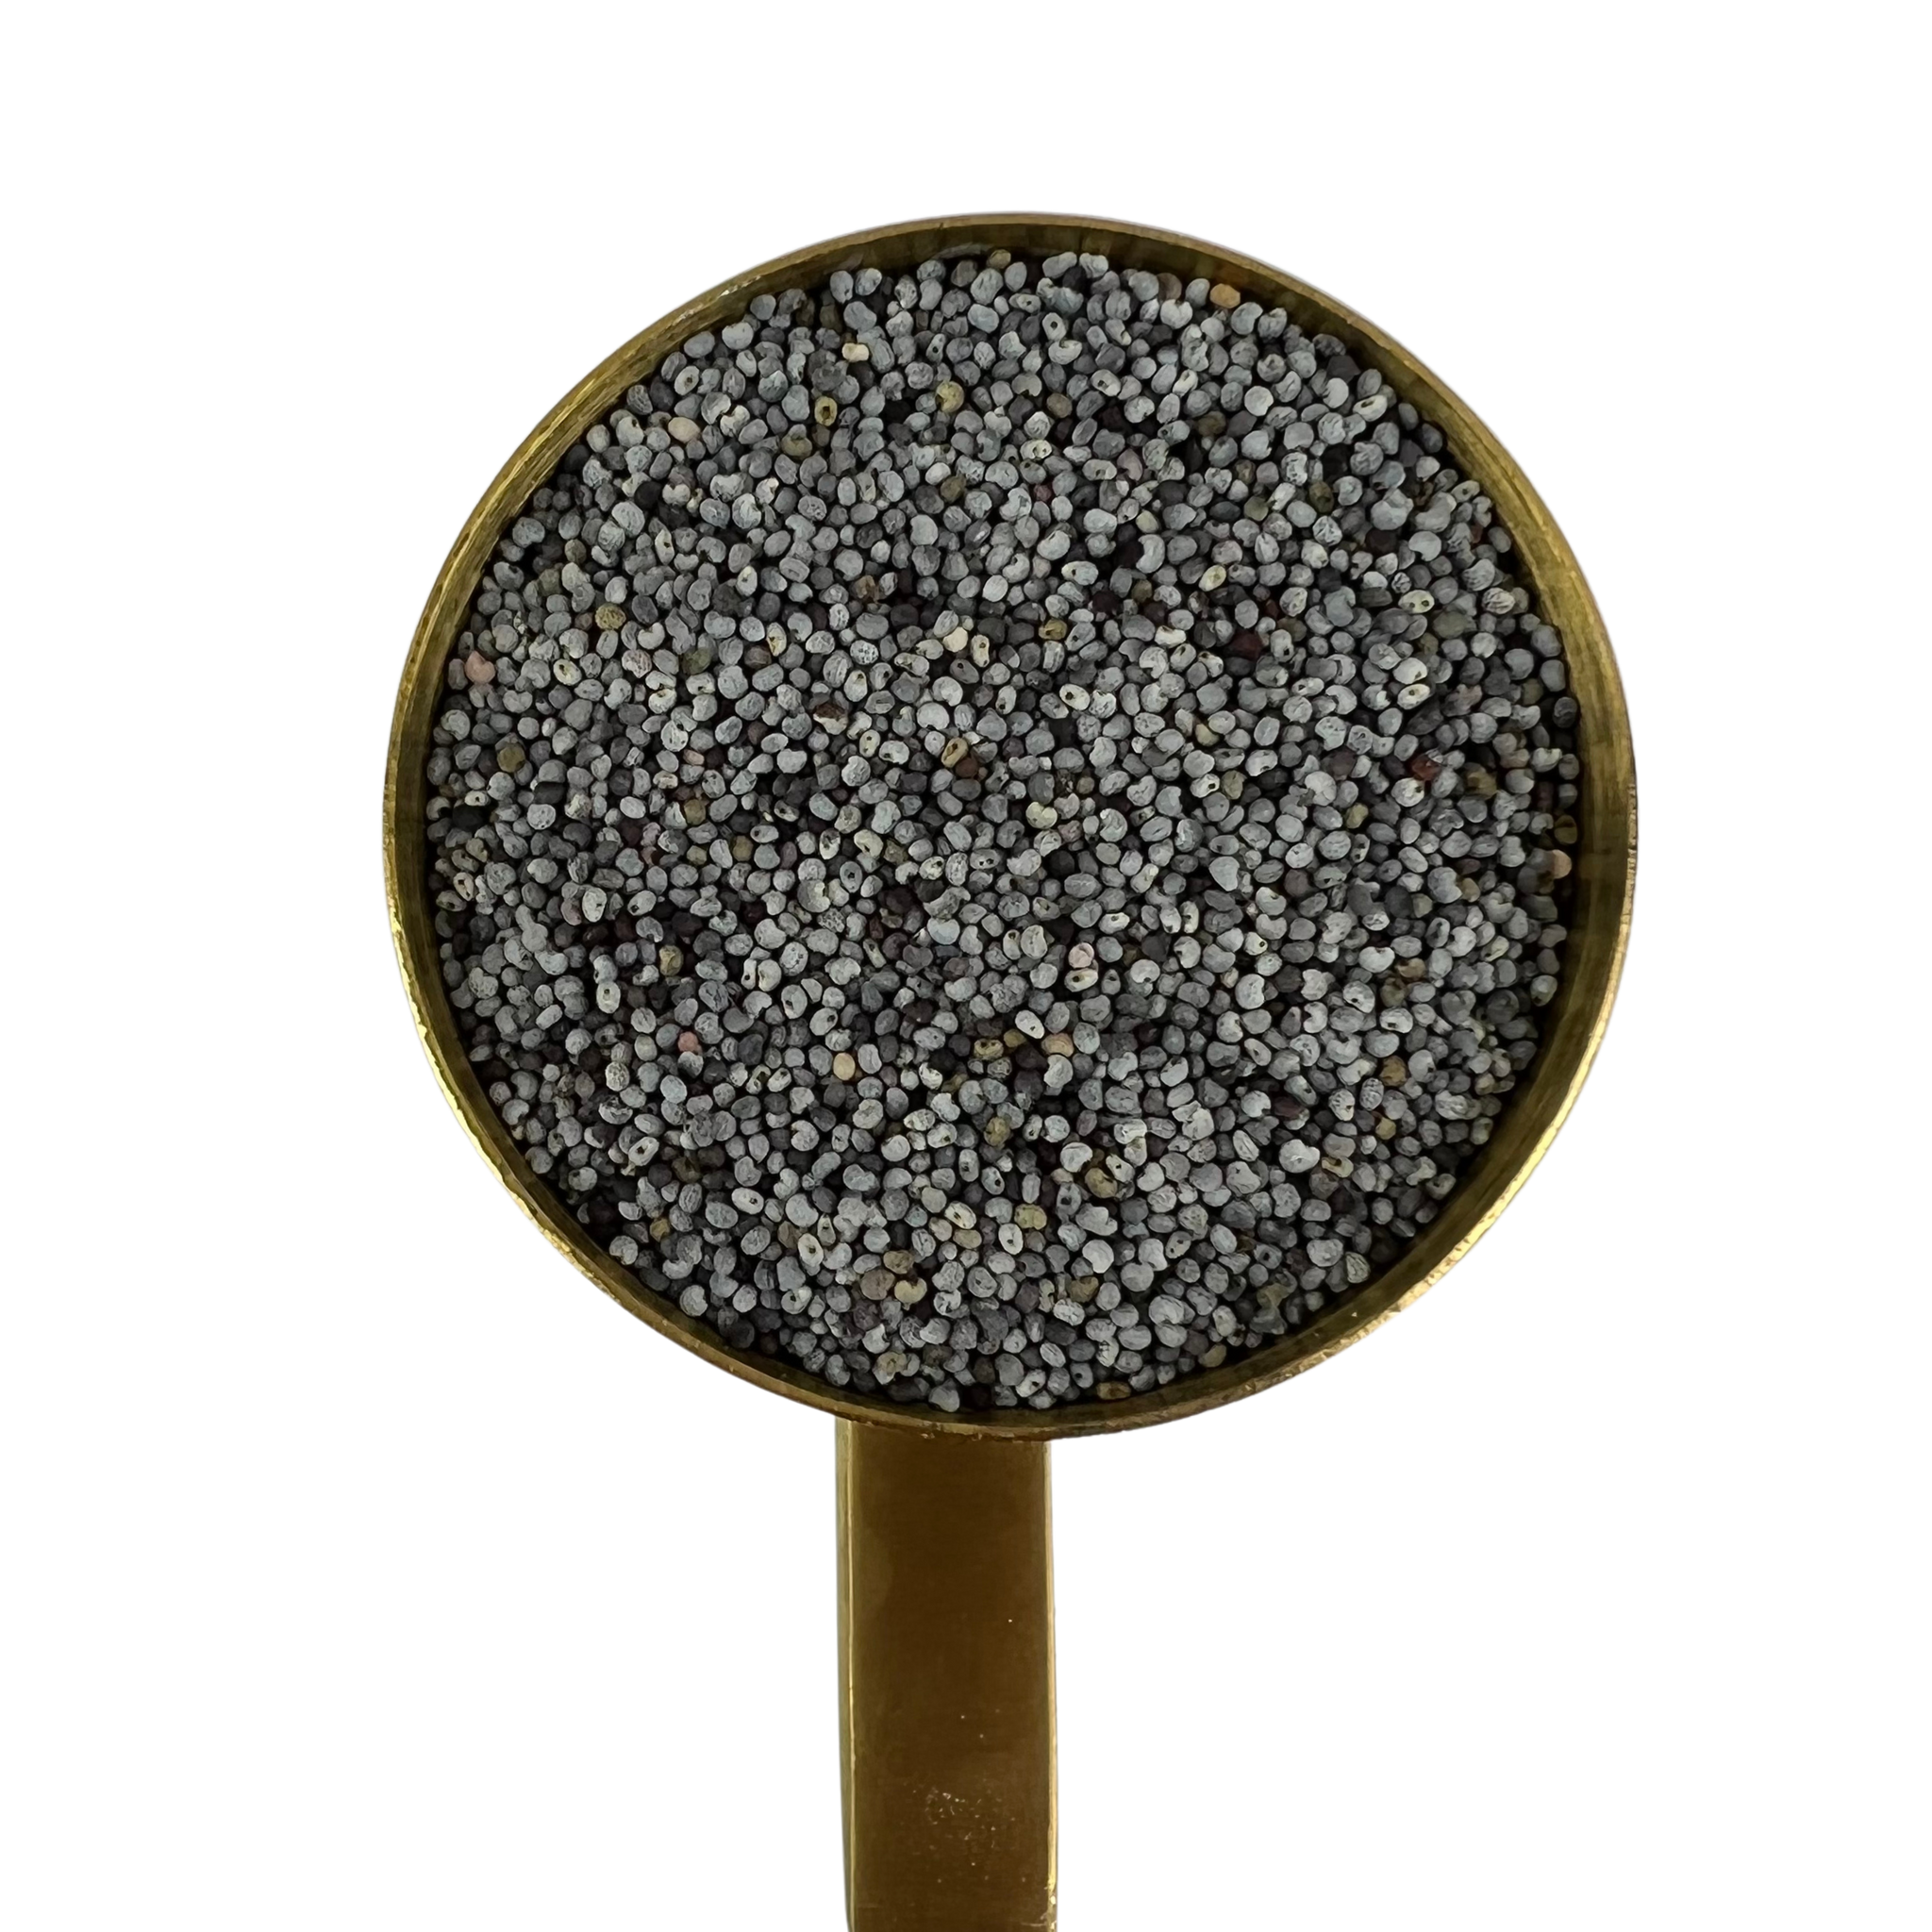 Afghan Poppy Seed